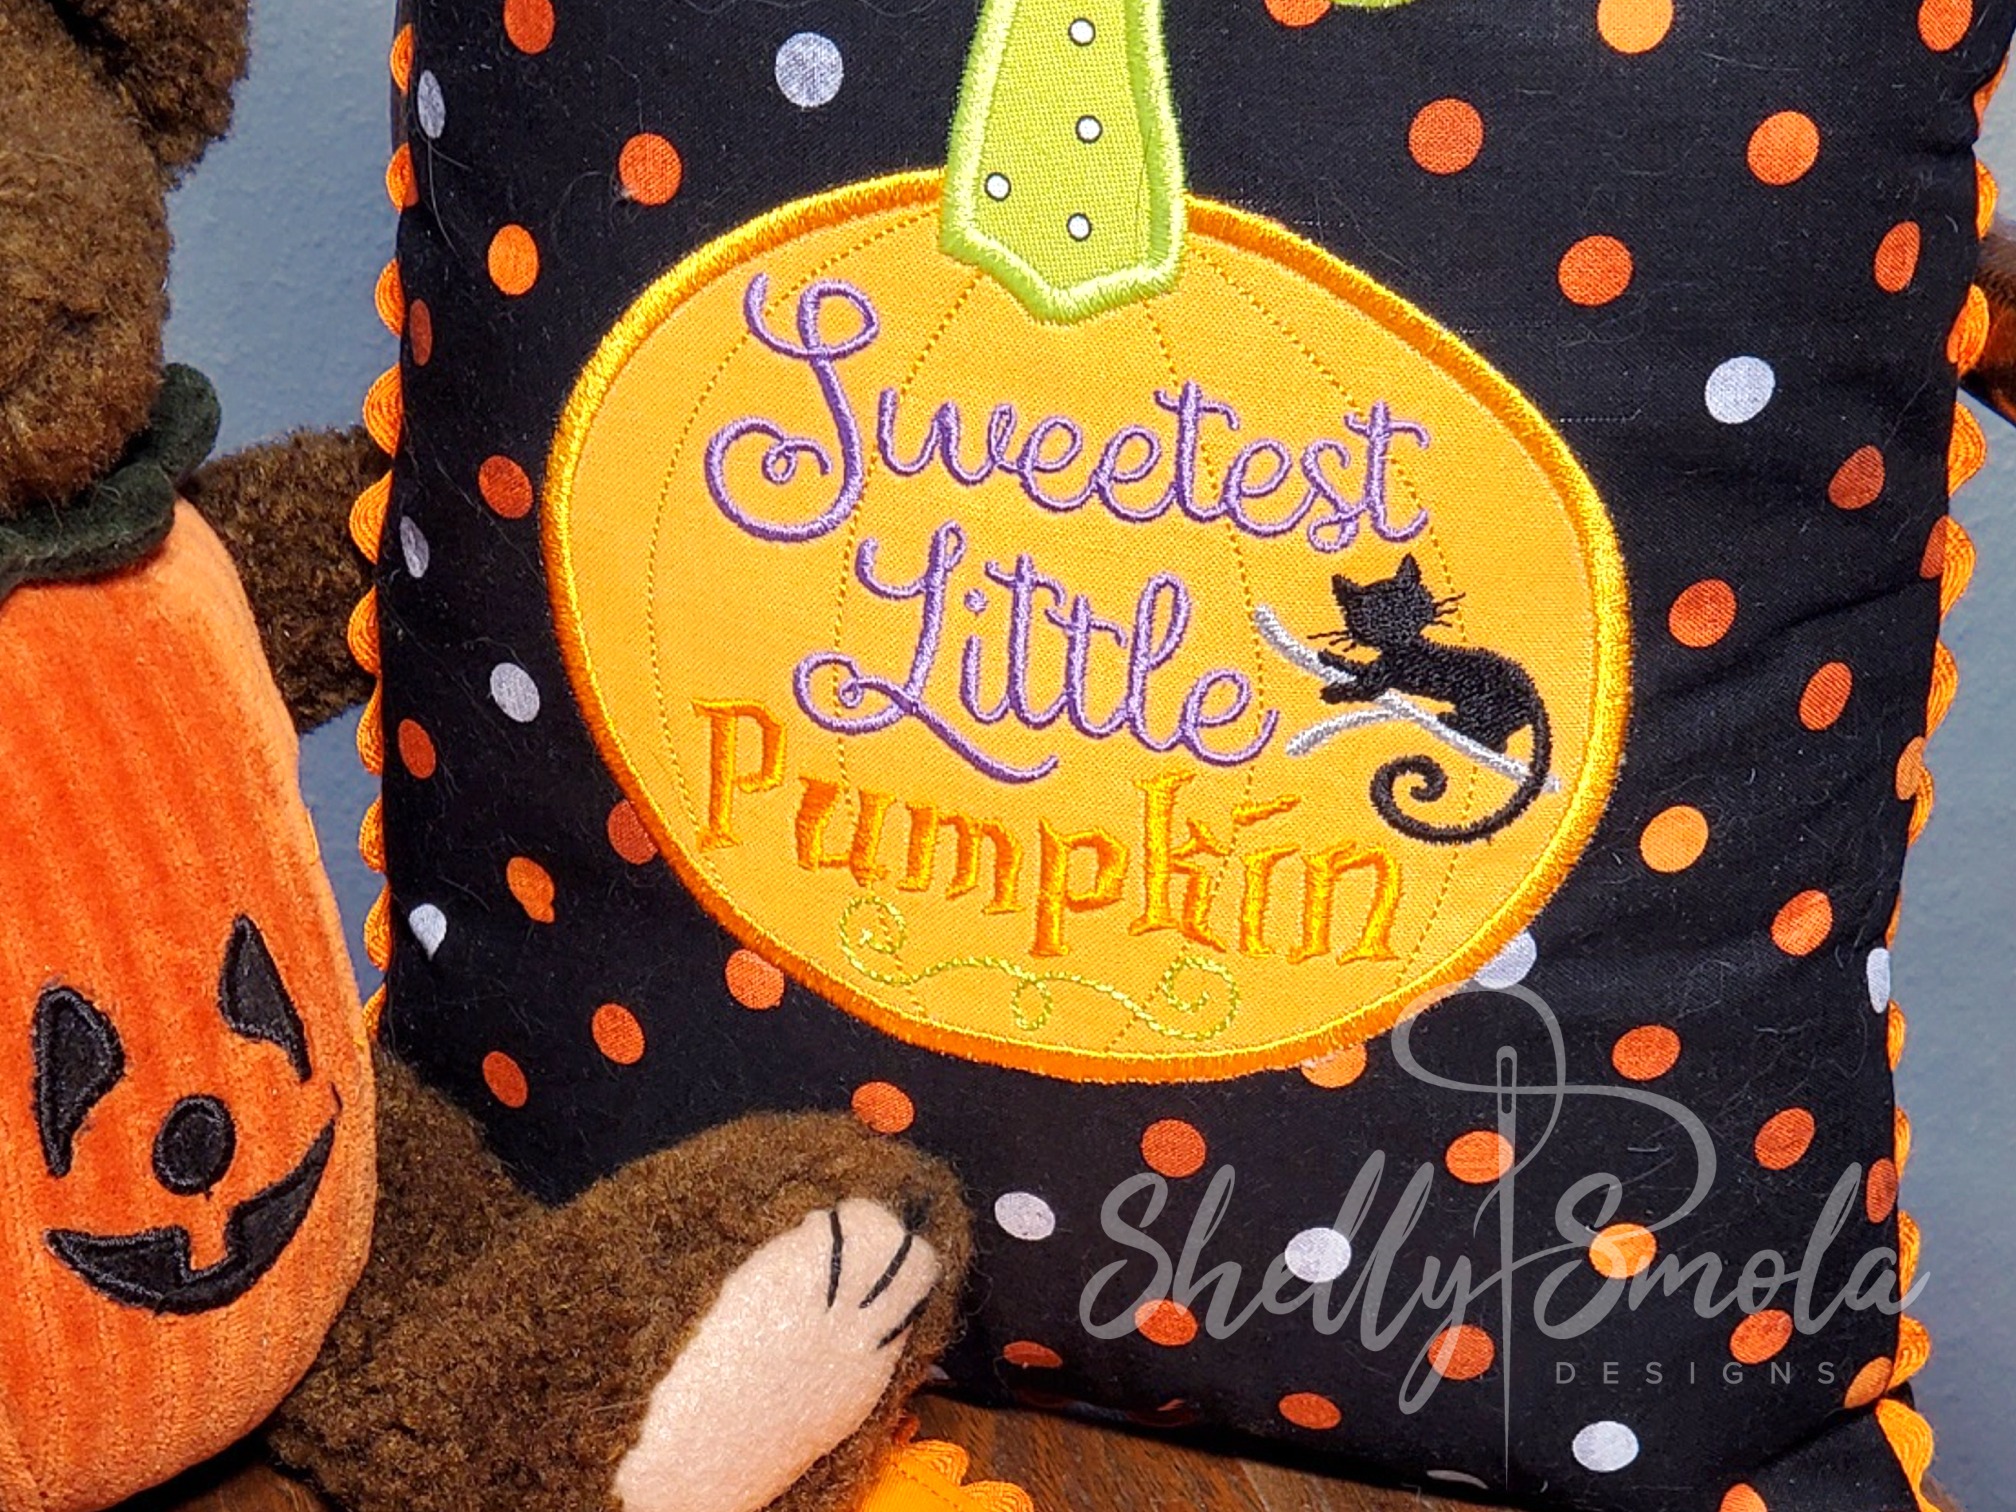 Sweetest Little Pumpkin by Shelly Smola